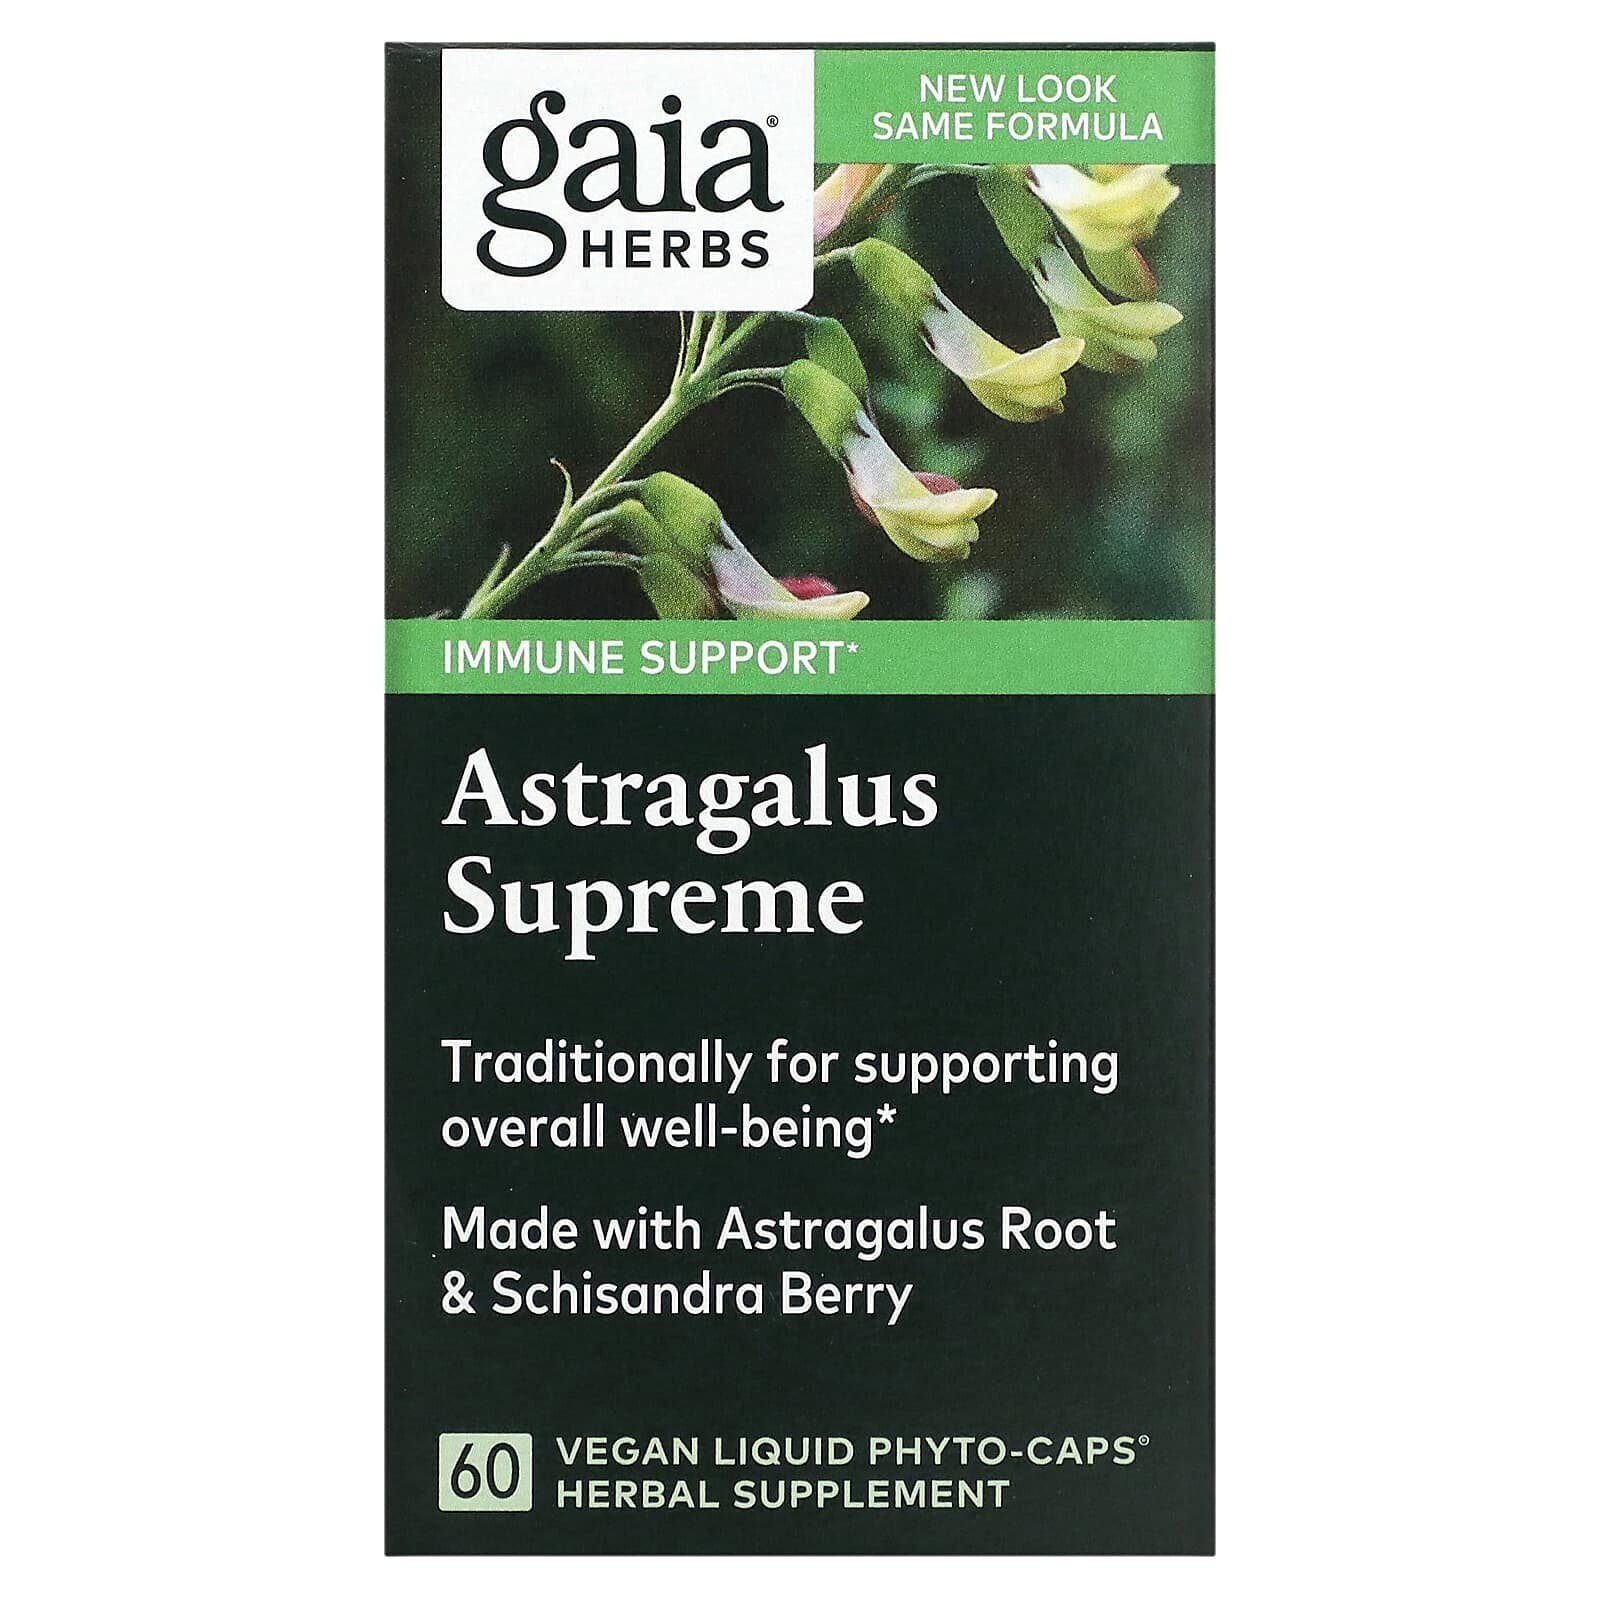 Astragalus Supreme, 120 Vegan Liquid Phyto-Caps